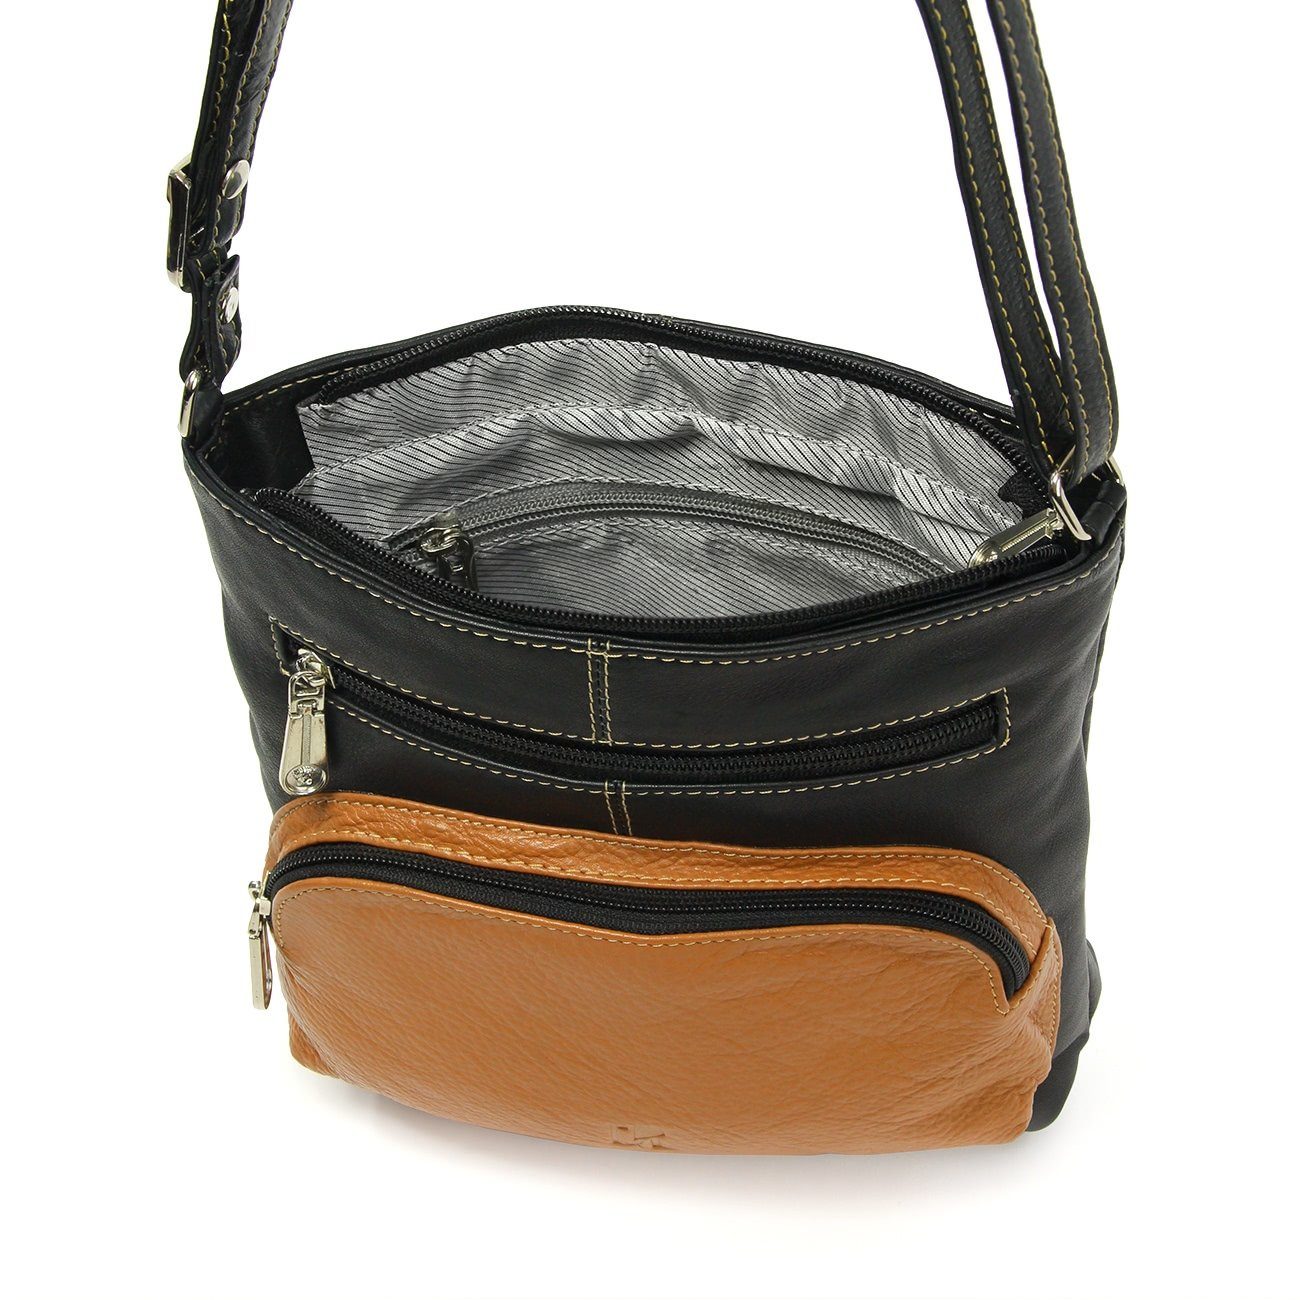 DrachenLeder Handtasche OTZ900X schwarz-braun DrachenLeder Echtleder Handtasche braun schwarz, (Handtasche), Tasche, Damen Damen